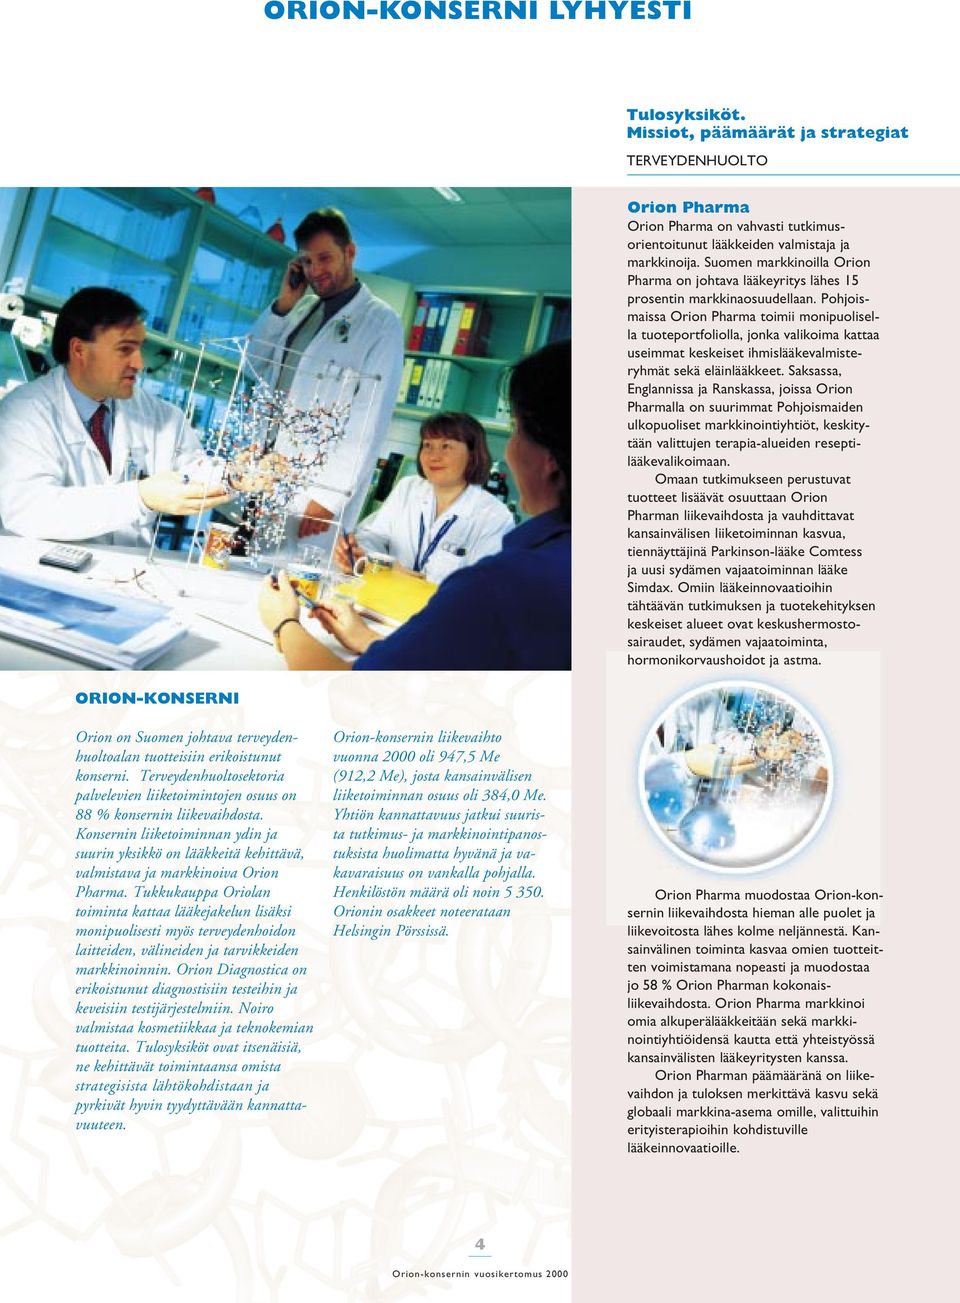 Pohjoismaissa Orion Pharma toimii monipuolisella tuoteportfoliolla, jonka valikoima kattaa useimmat keskeiset ihmislääkevalmisteryhmät sekä eläinlääkkeet.